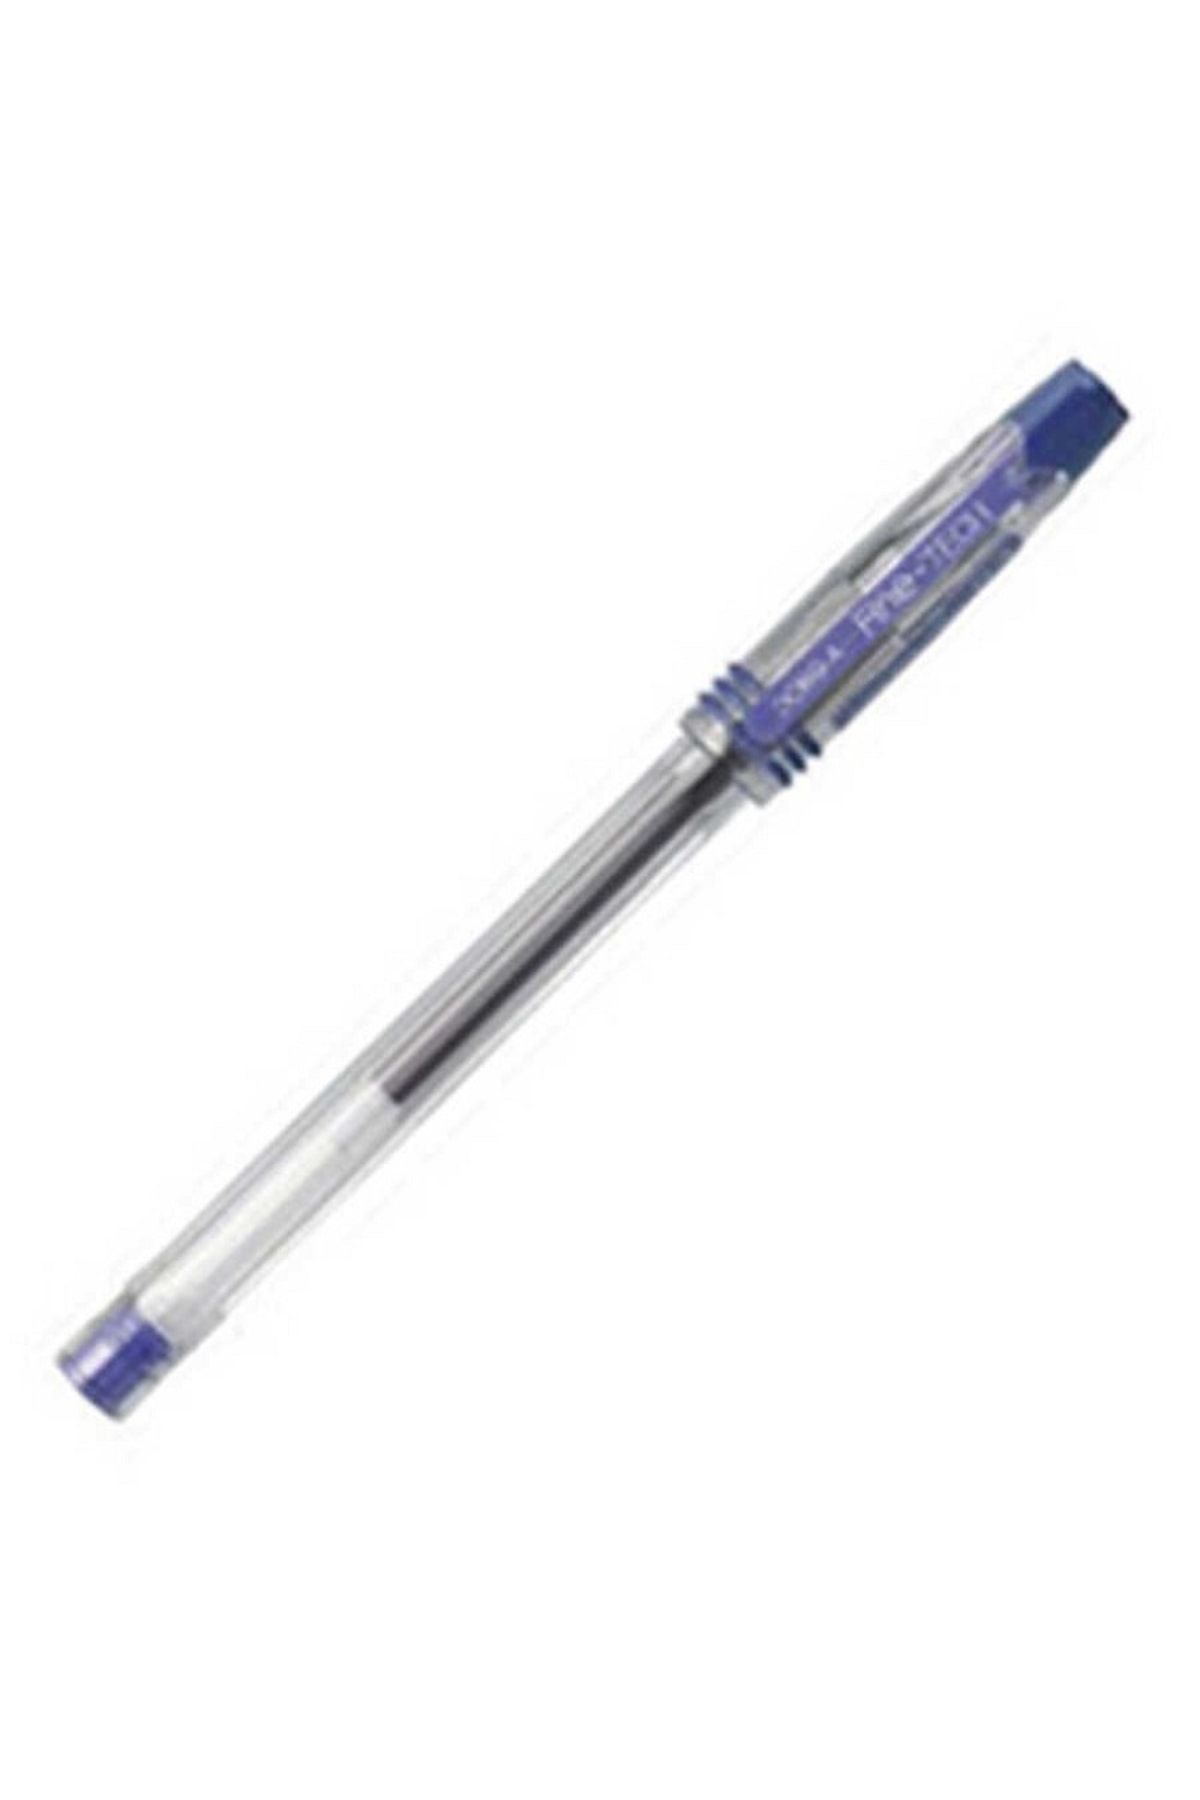 Dong A Fine-tech 0,3 Mm Iğne Uçlu Kalem 12 Adet Mavi Renk Kalem